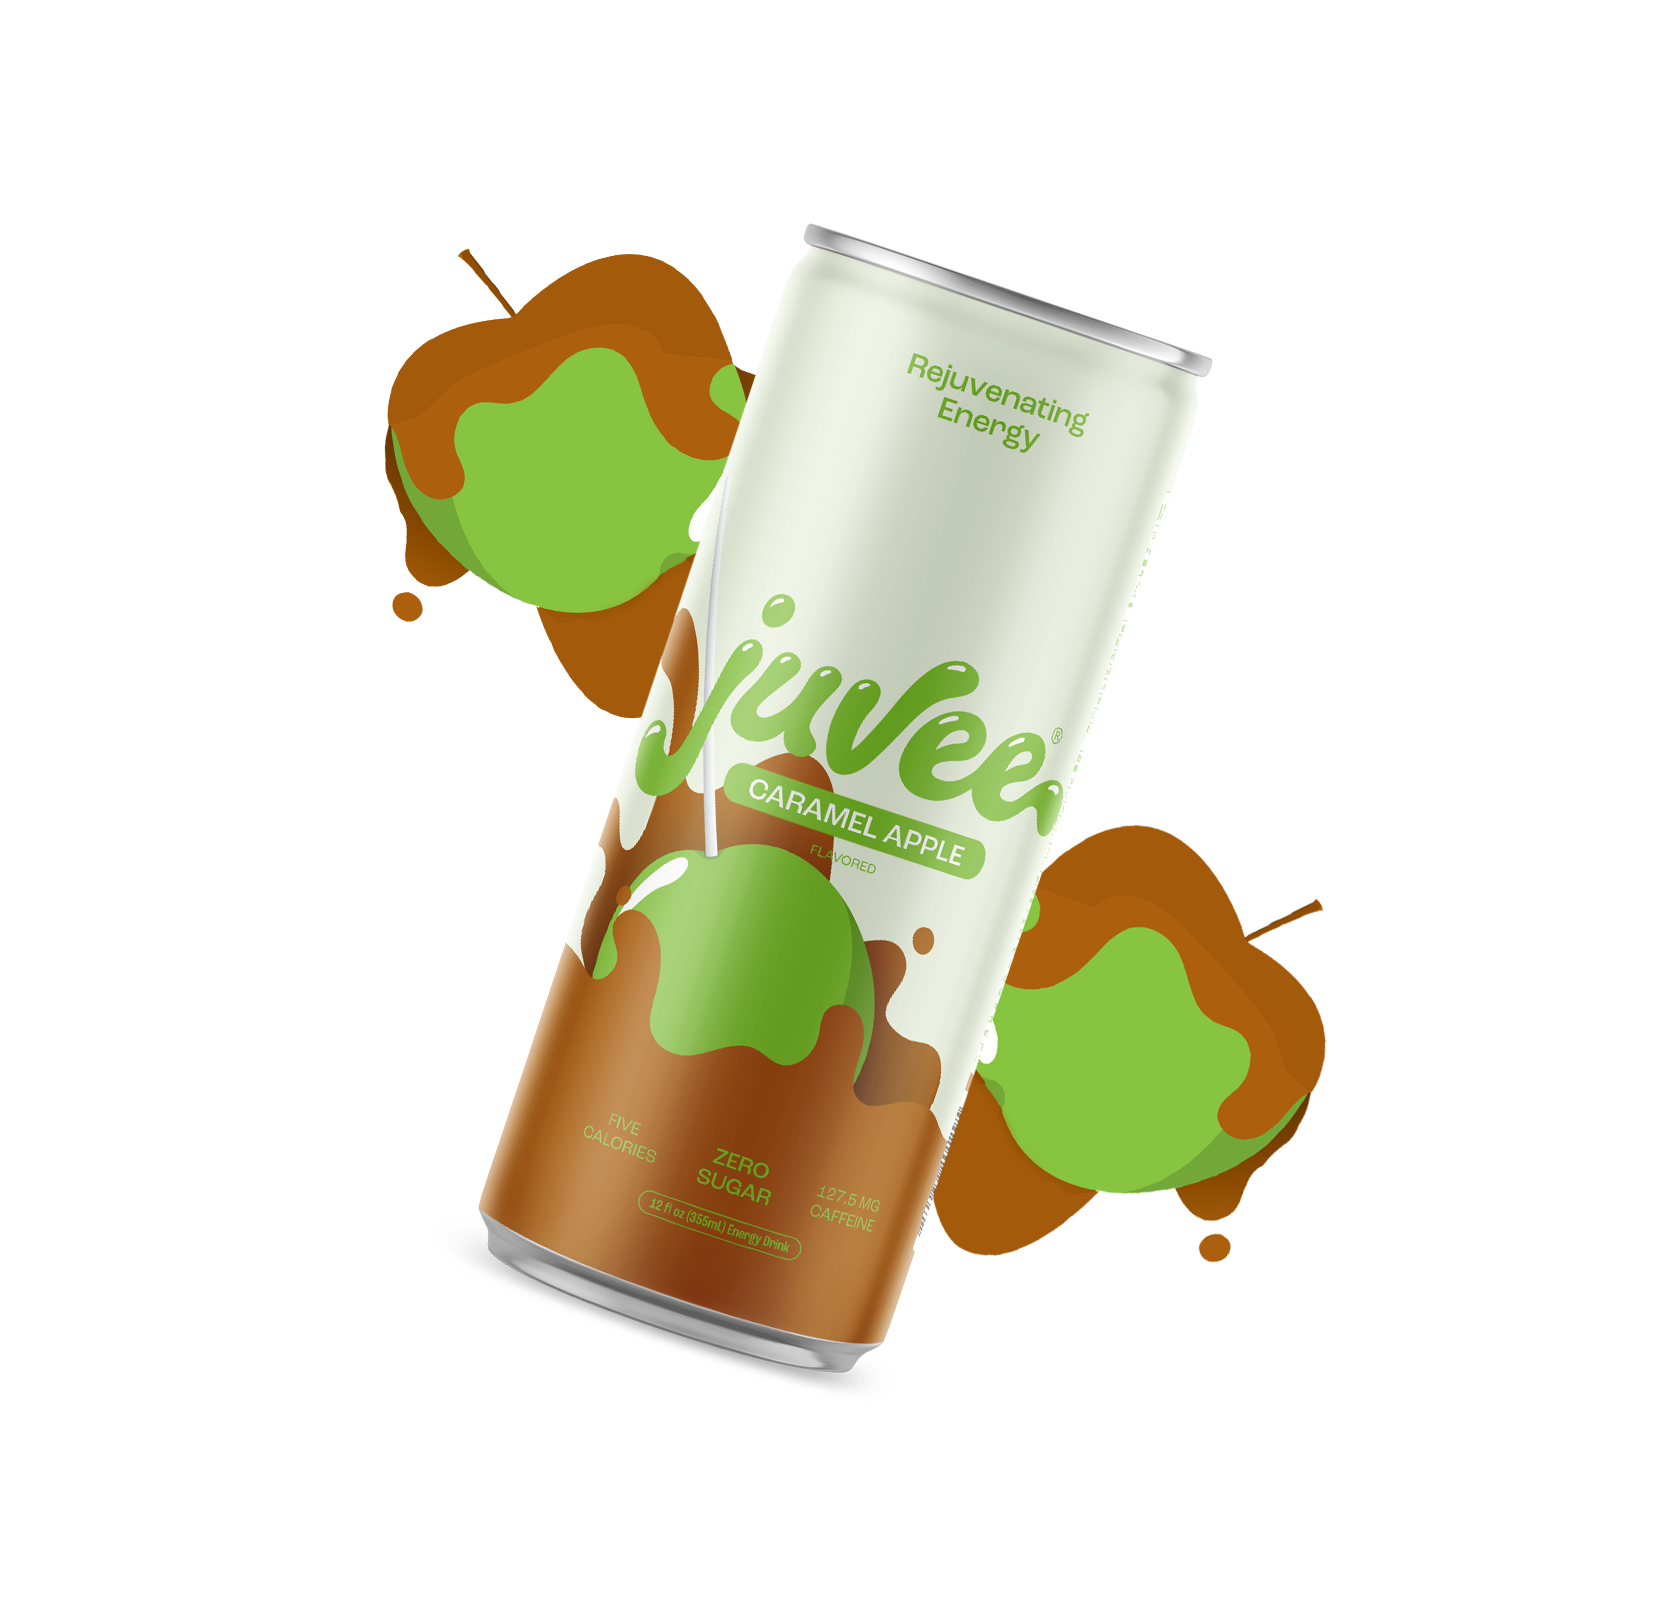 Caramel Apple Juvee Energy Drink 12-pack